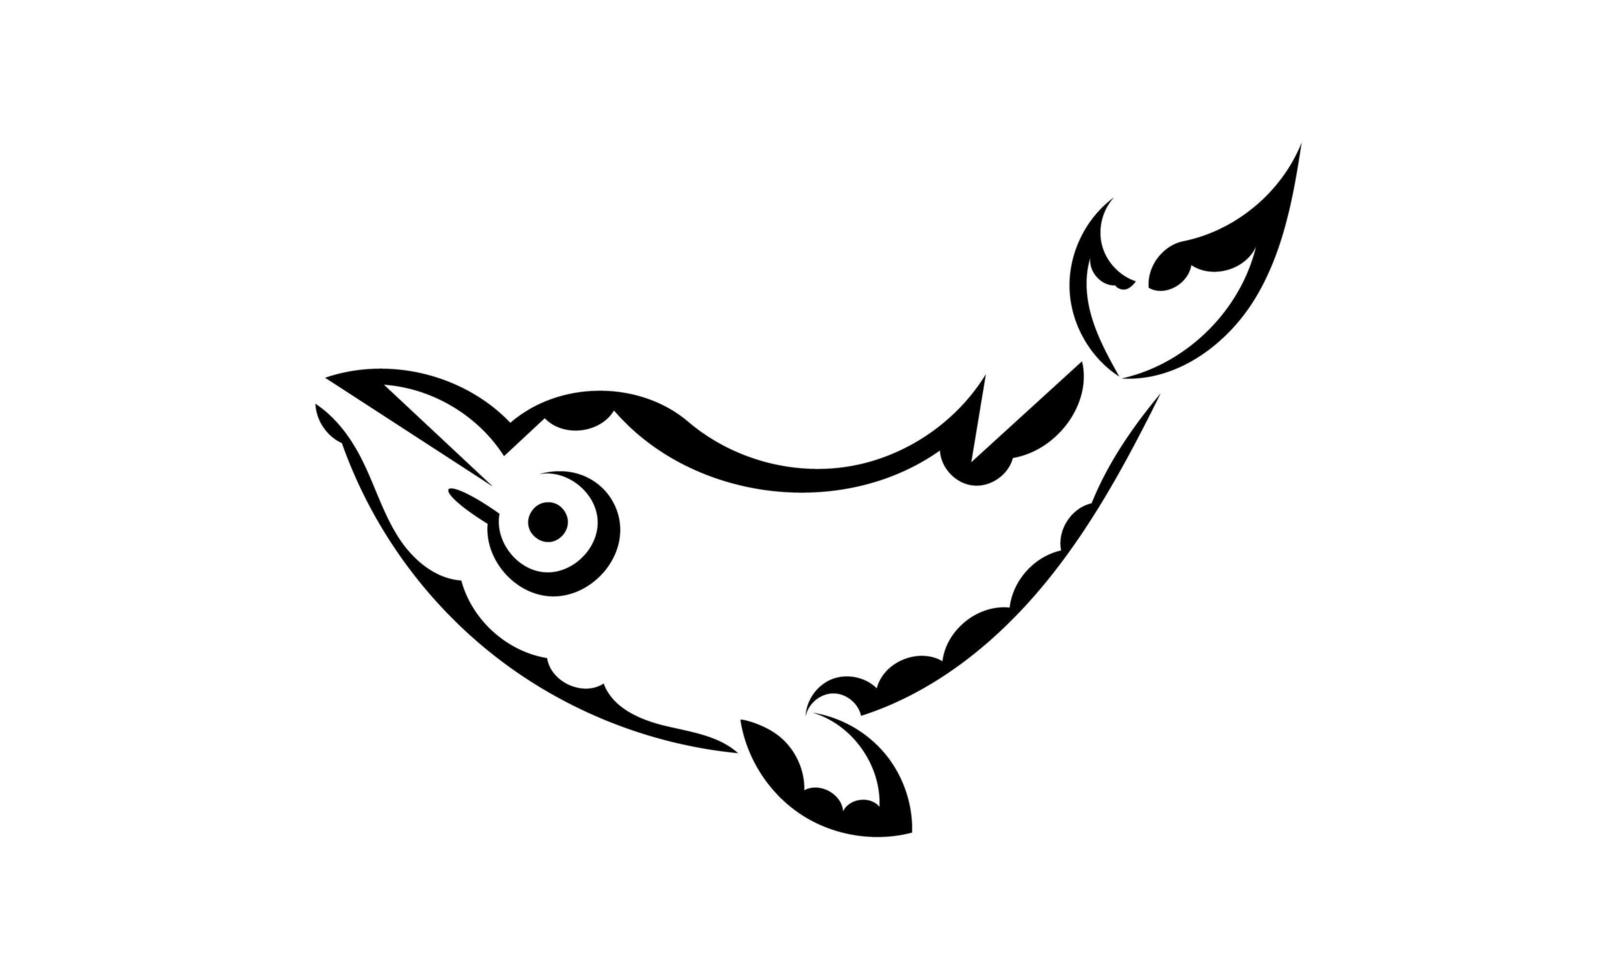 walvistattoo in maori-stijl. geïsoleerd. vector illustratie